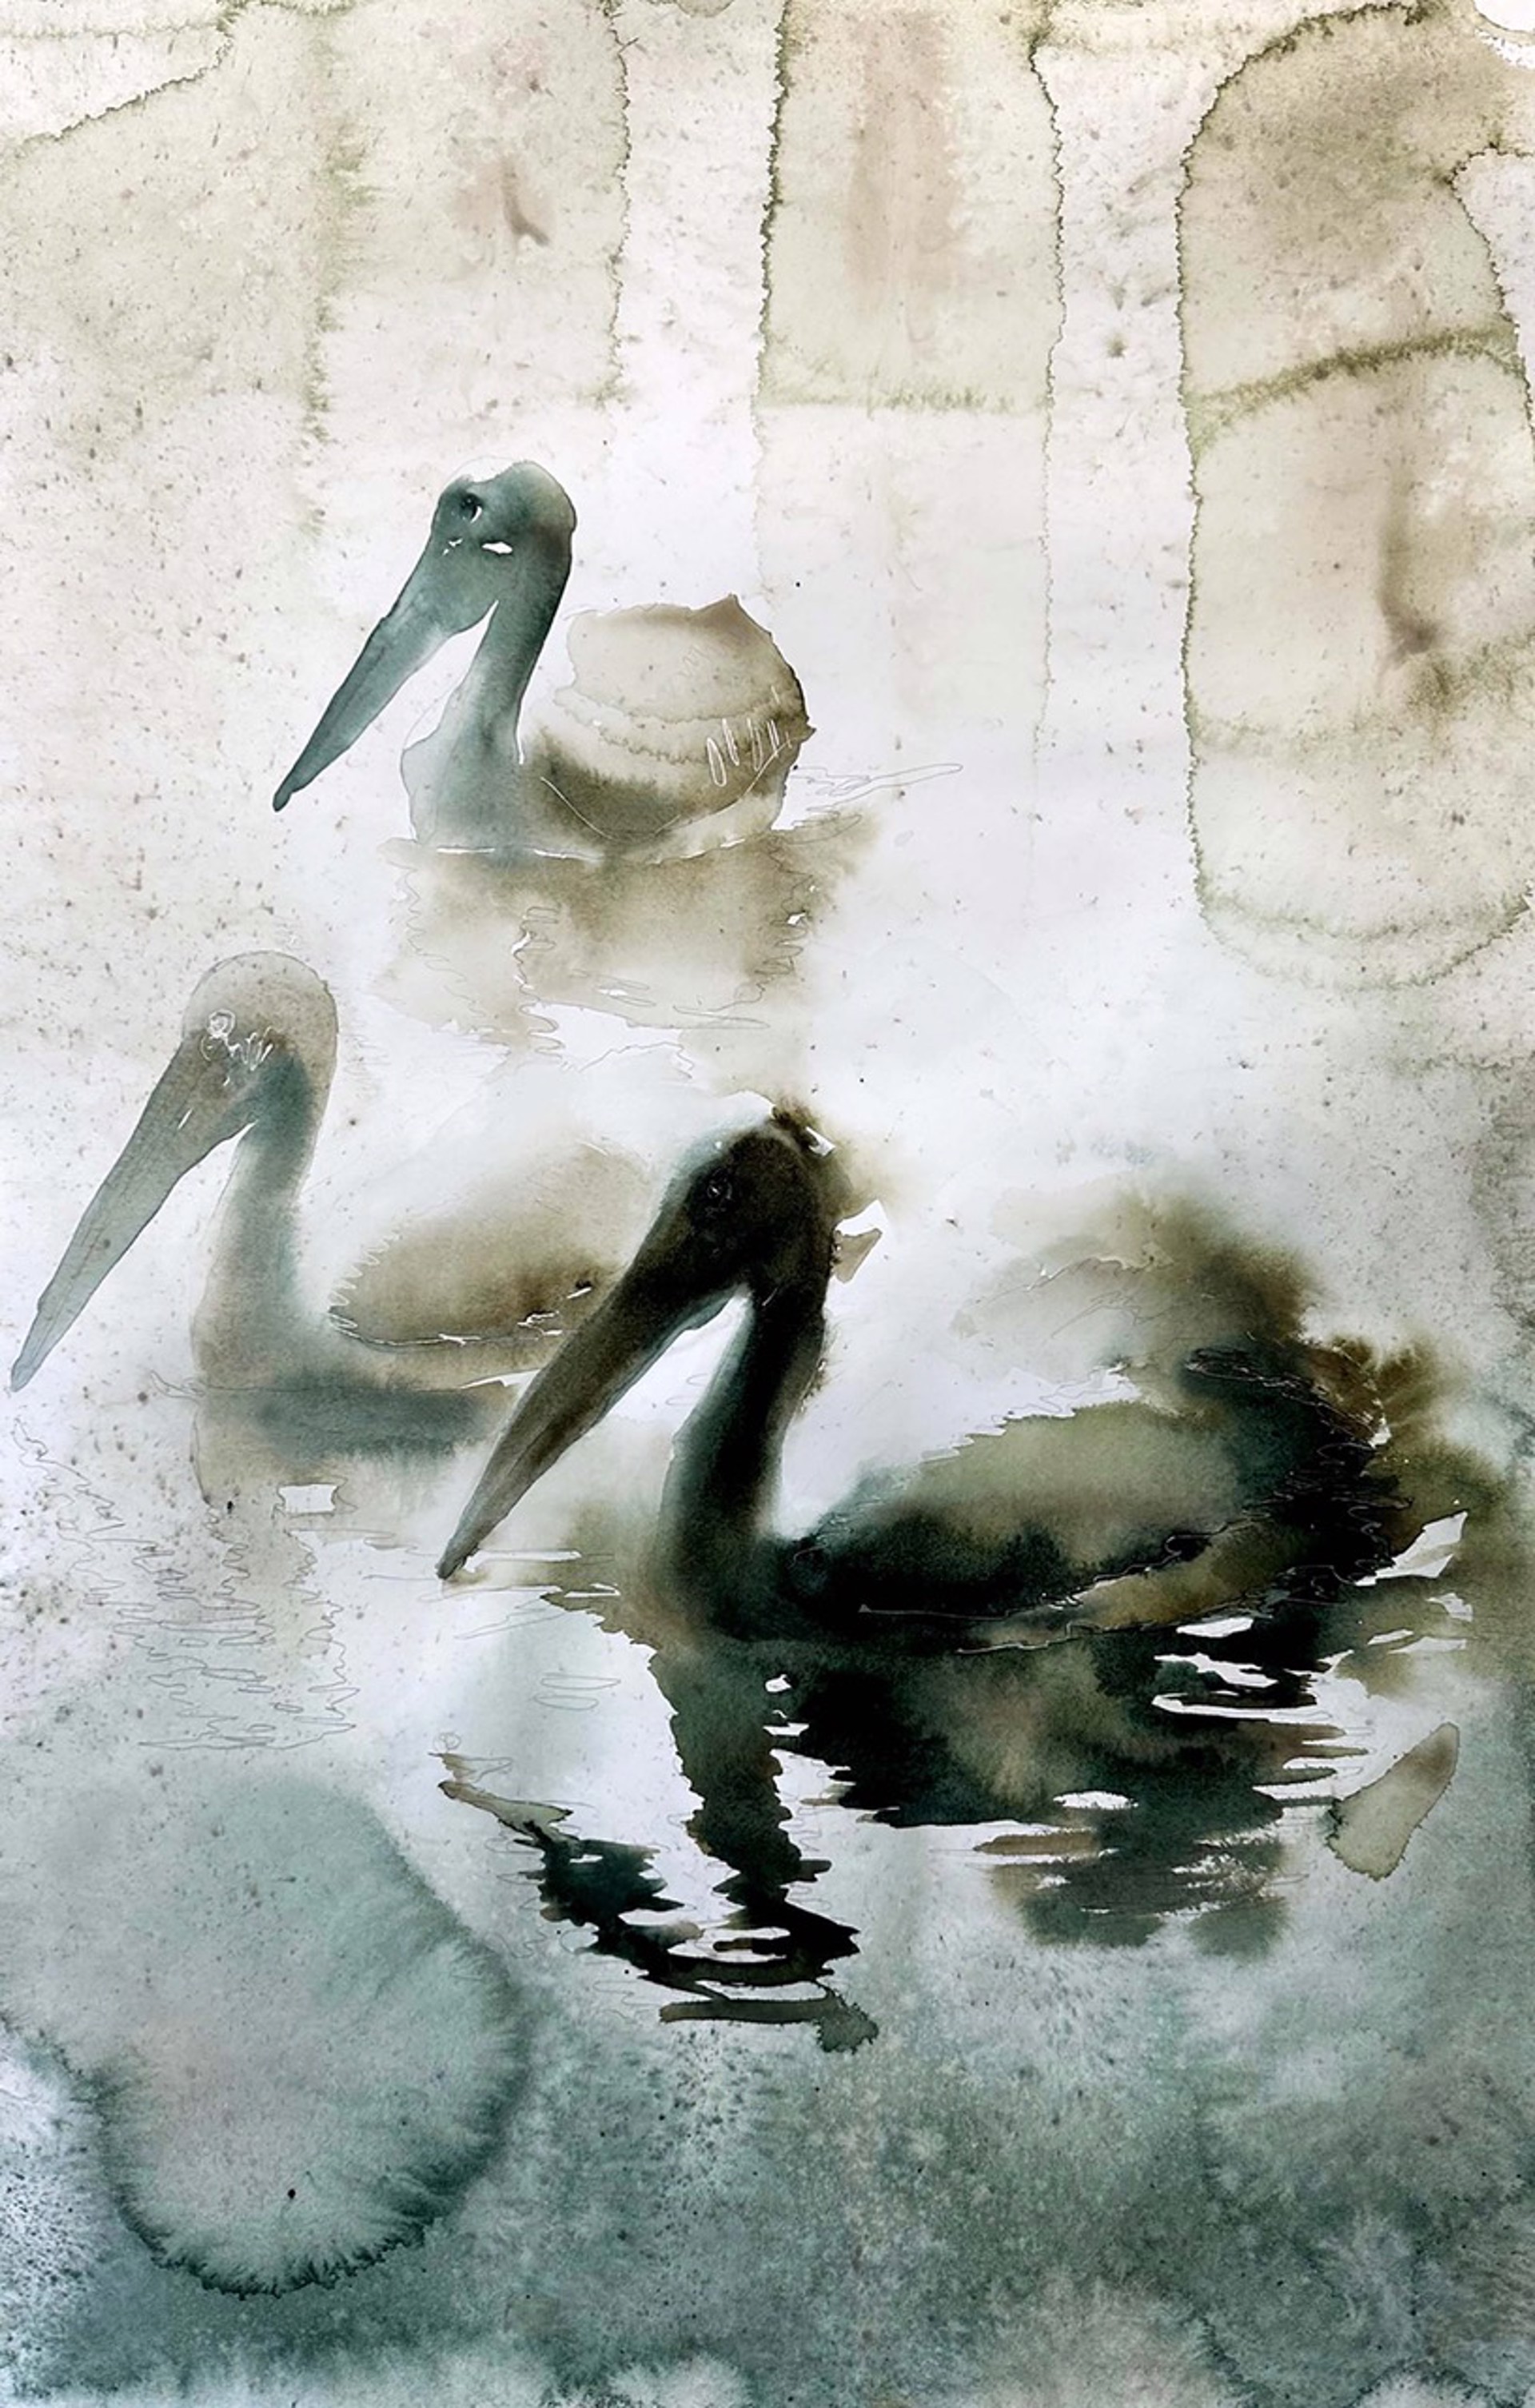 Birds of Florida - Pelicans by Carol Carter